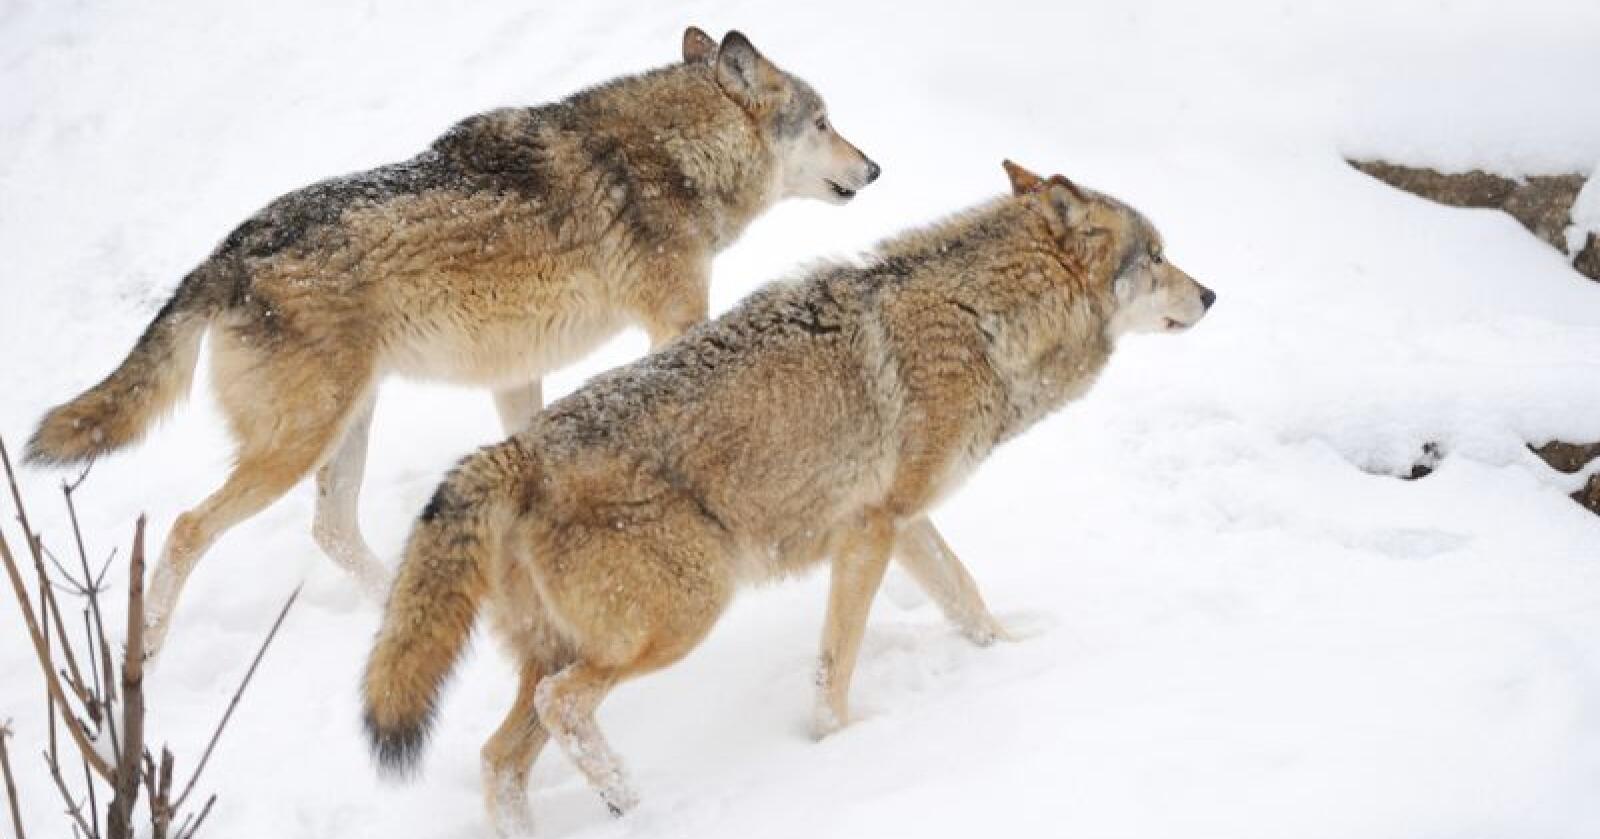 Statens naturoppsyn bekrefter at det er ulv i revirene til Osdals- og Julussaflokkene. Illustrasjonsbilde. (Foto: Colourbox/Volodymyr Burdiak)